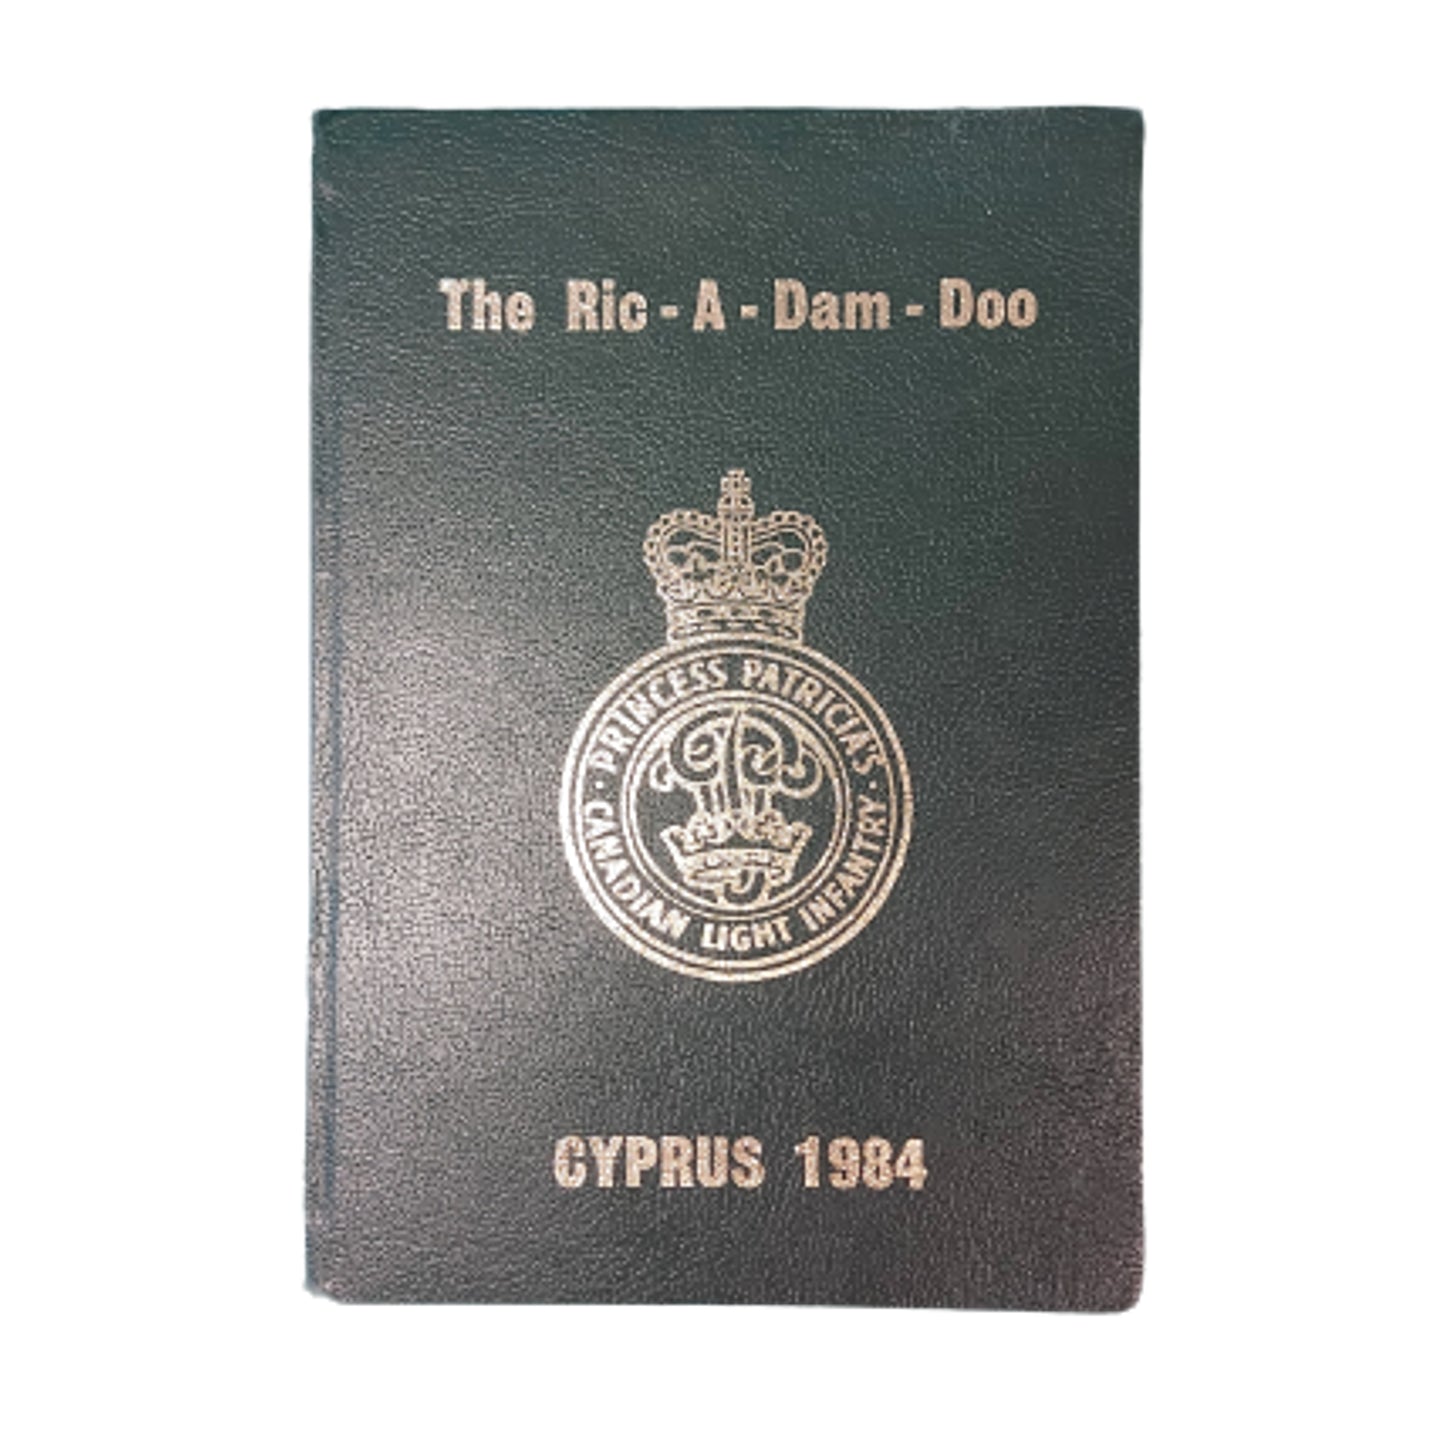 PPCLI Cyprus 1984 Regimental Book